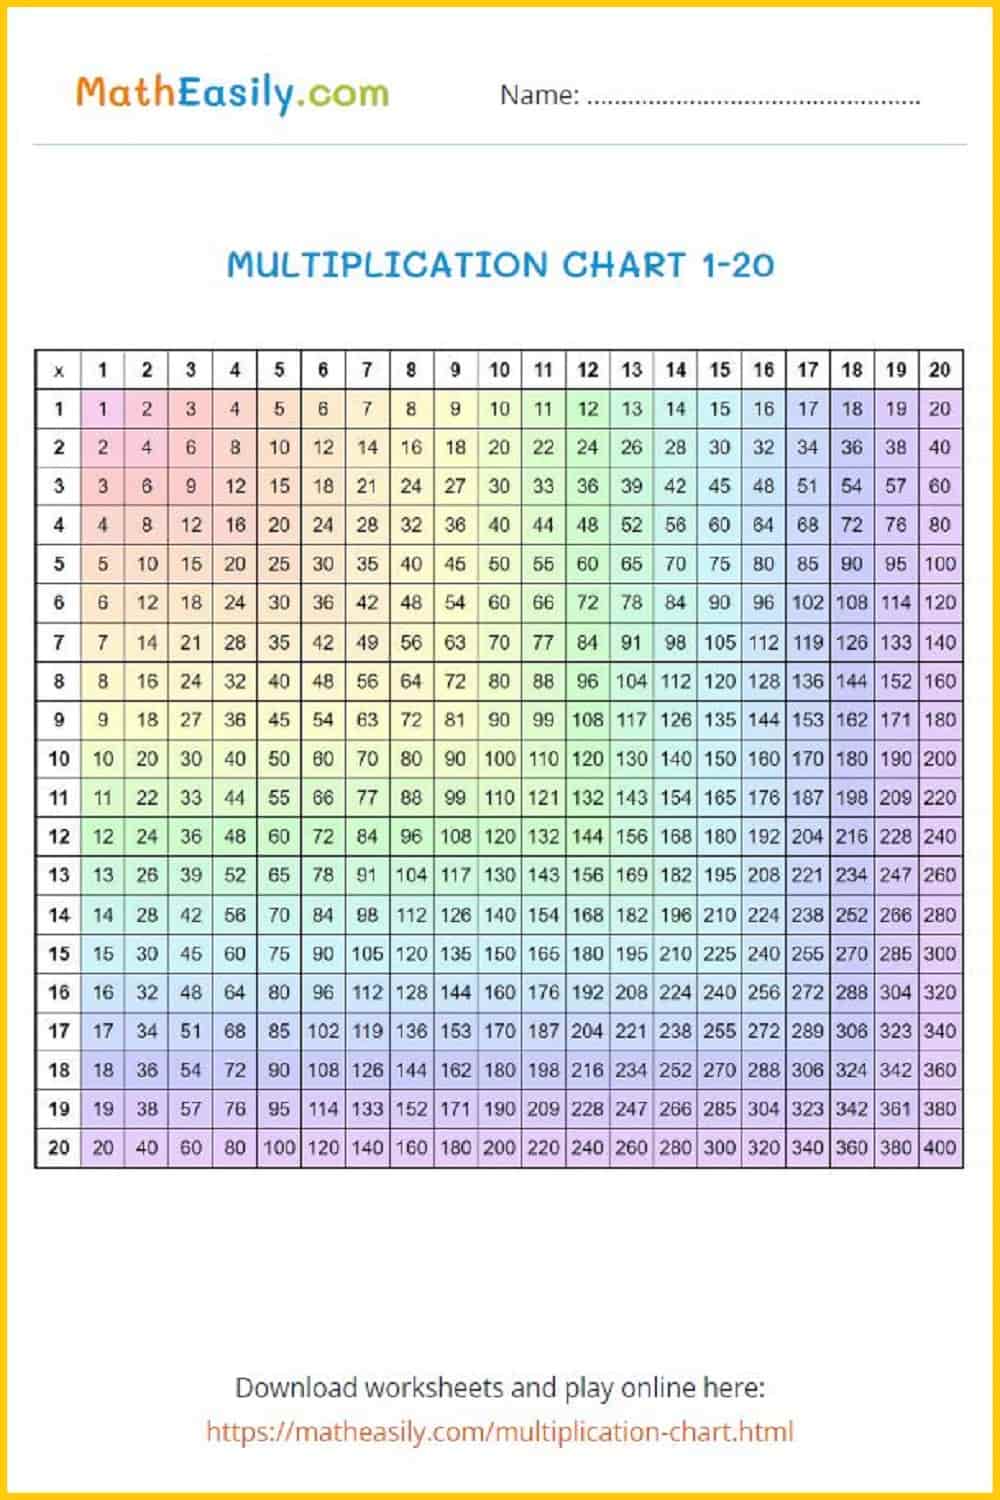 Free printable multiplication chart 1 20 PDF. Free printable multiplication grid PDF. Multiplication table chart printable free. 
Free printable multiplication chart 1 20 PDF. Table chart 1 to 20. Multiplication chart PDF.